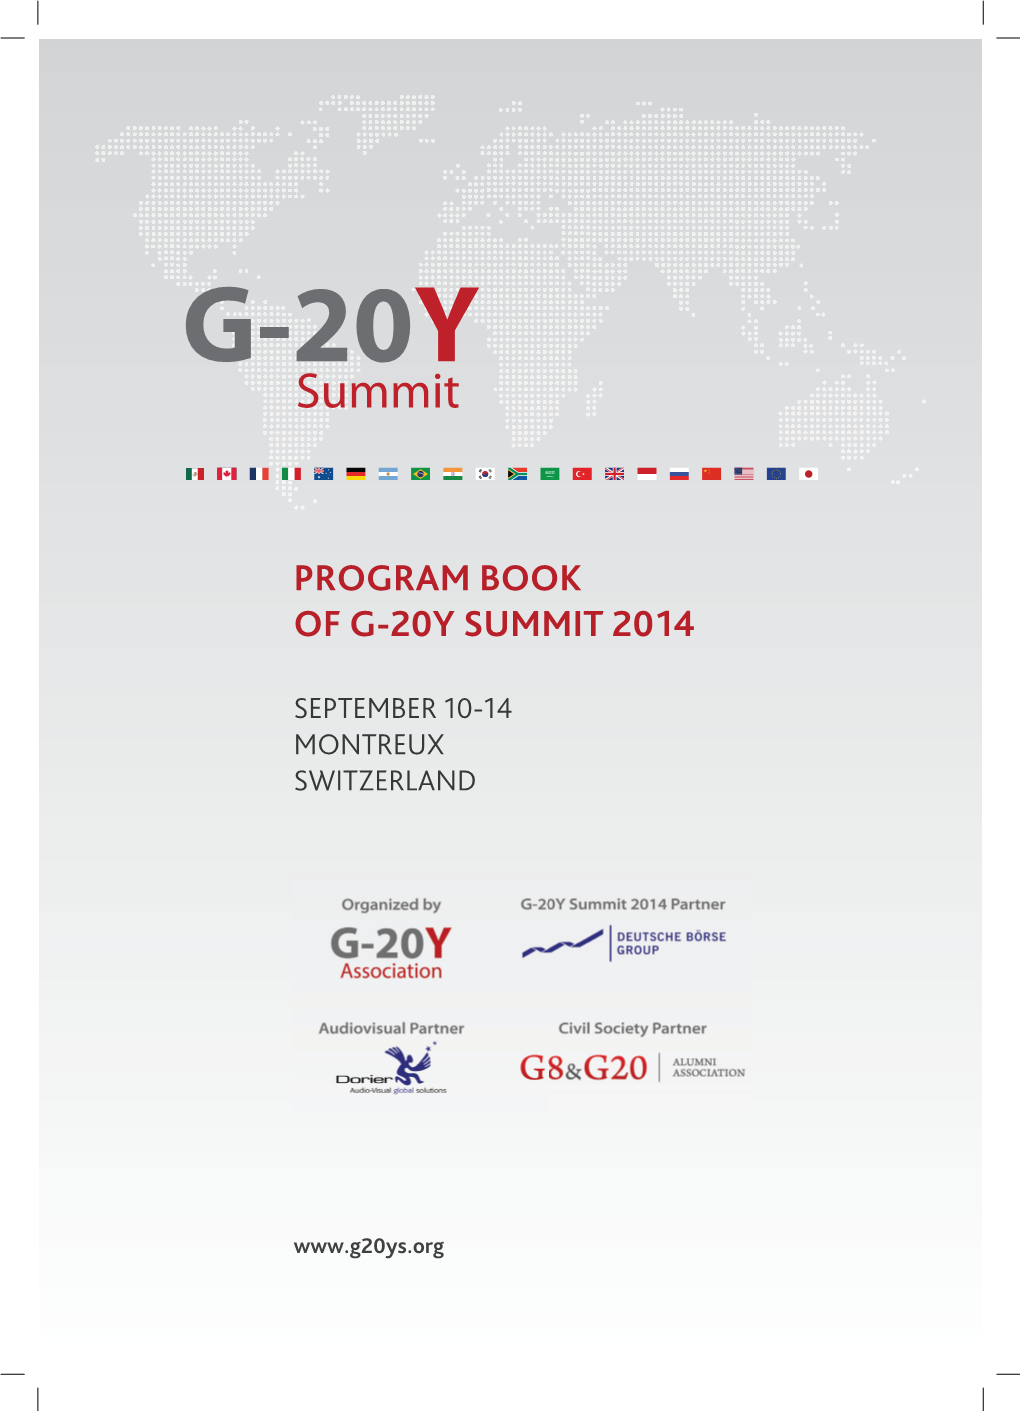 Program Book of G-20Y Summit 2014